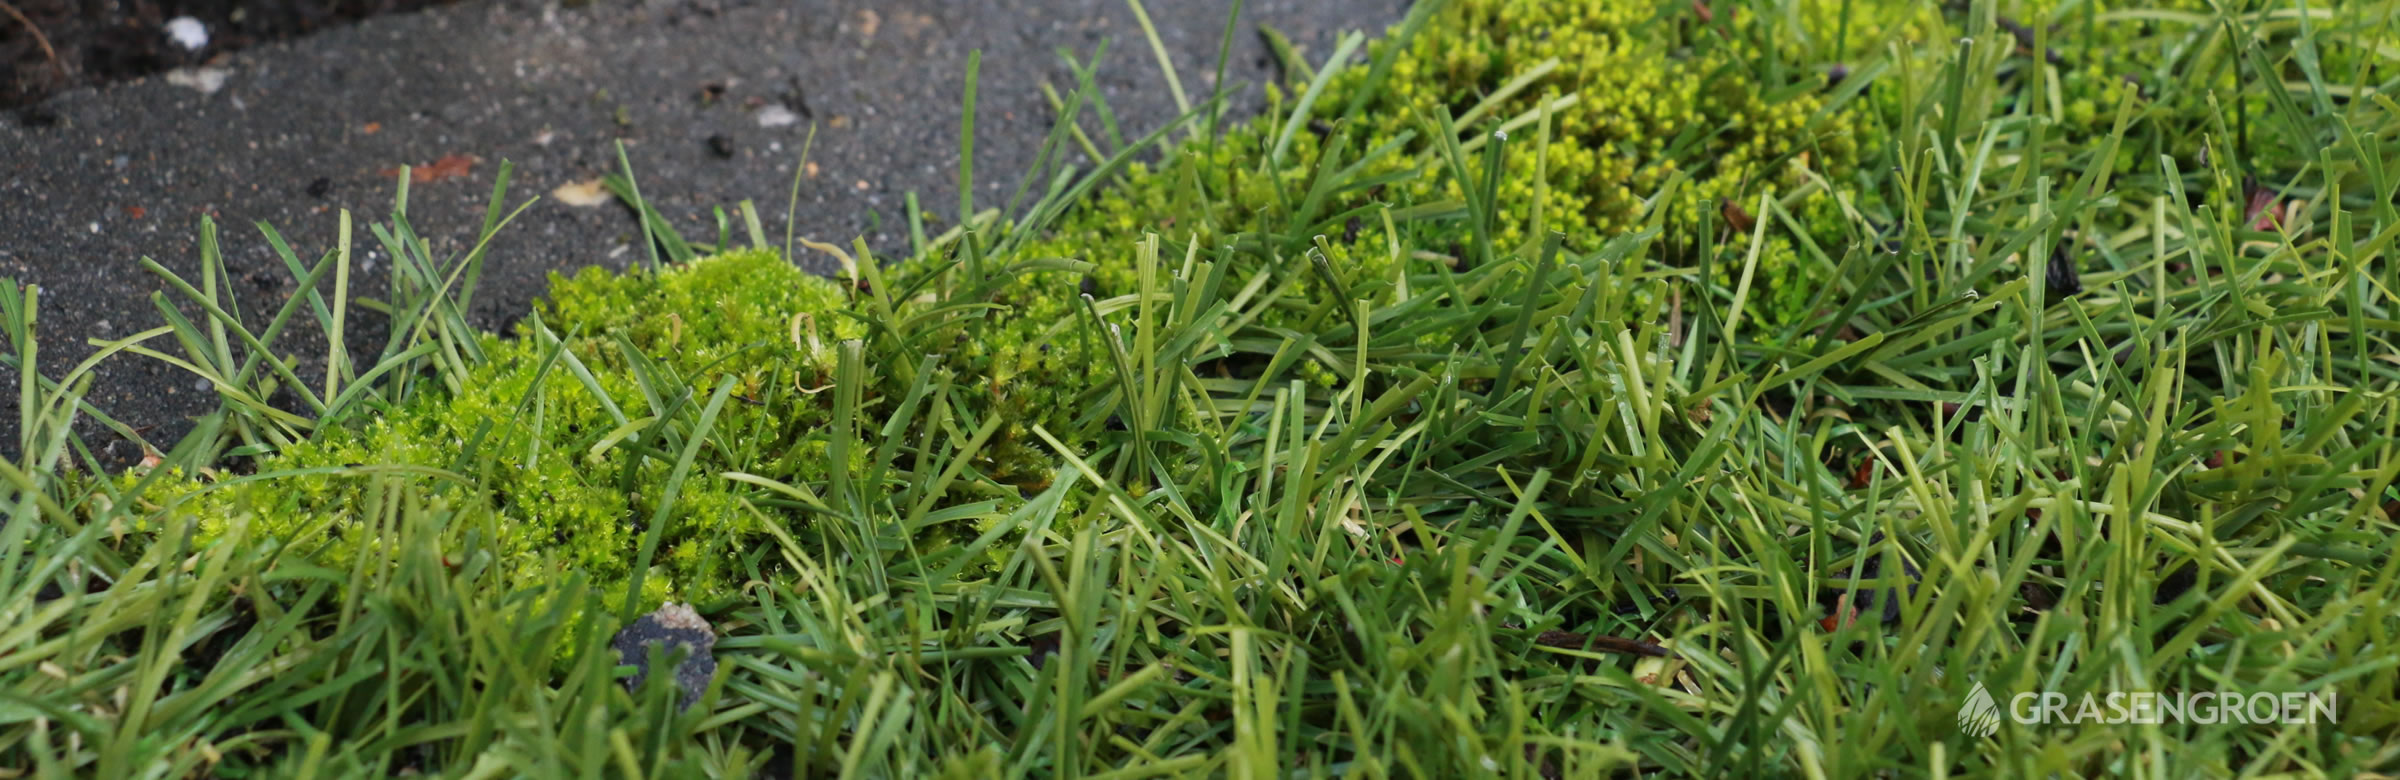 Mosinkunstgrasverwijderen • Gras en Groen website